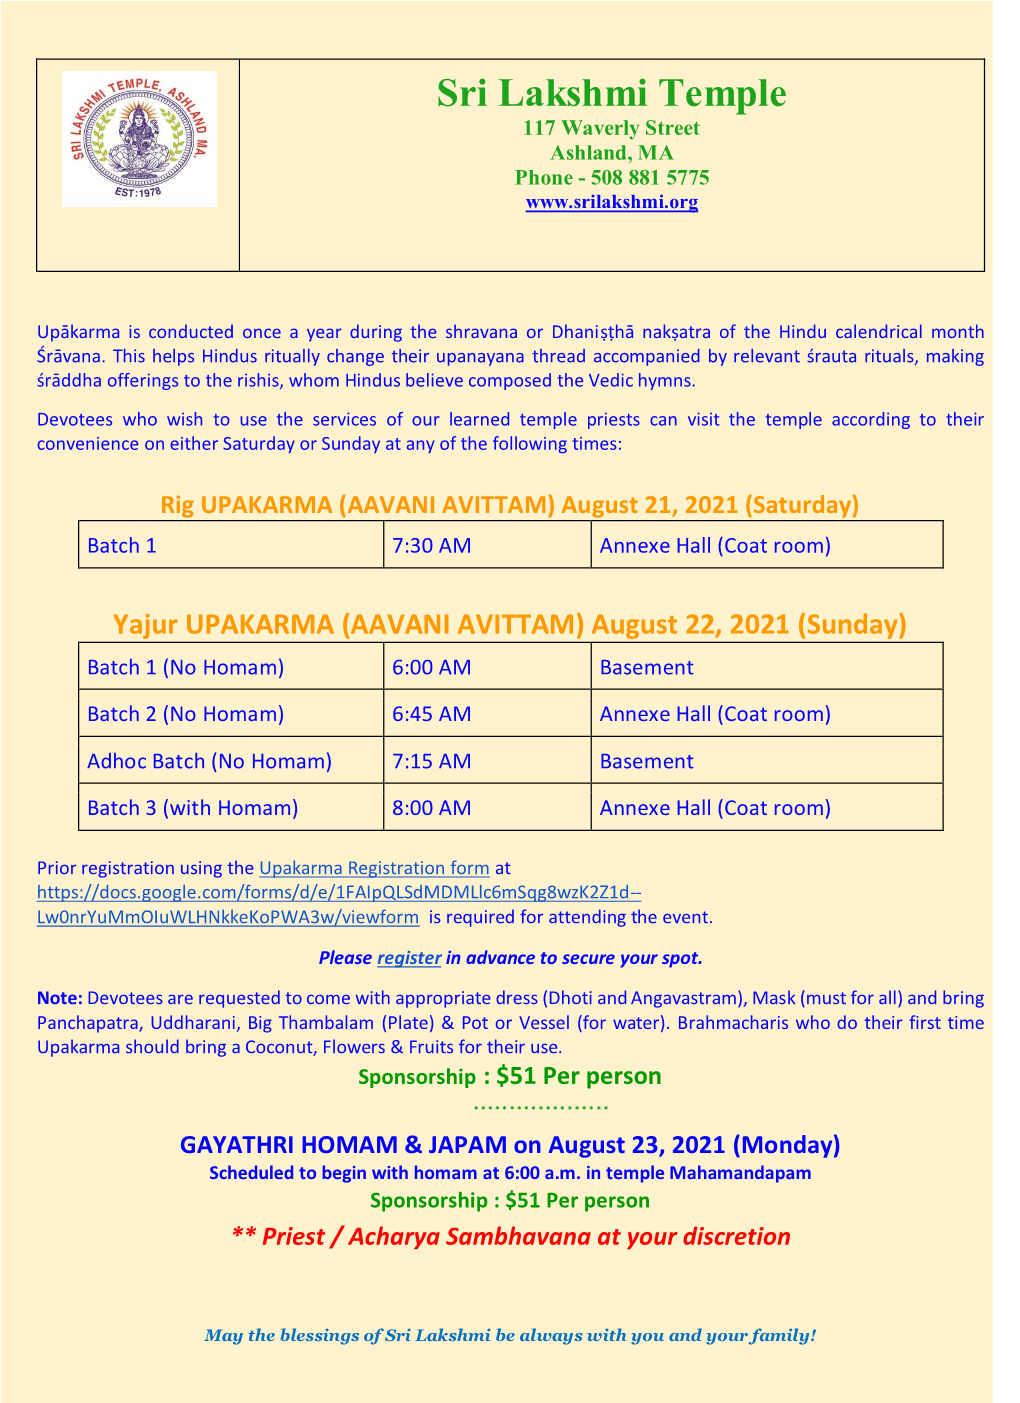 Yajur UPAKARMA (AAVANI AVITTAM) August 22, 2021 (Sunday) Batch 1 (No Homam) 6:00 AM Basement